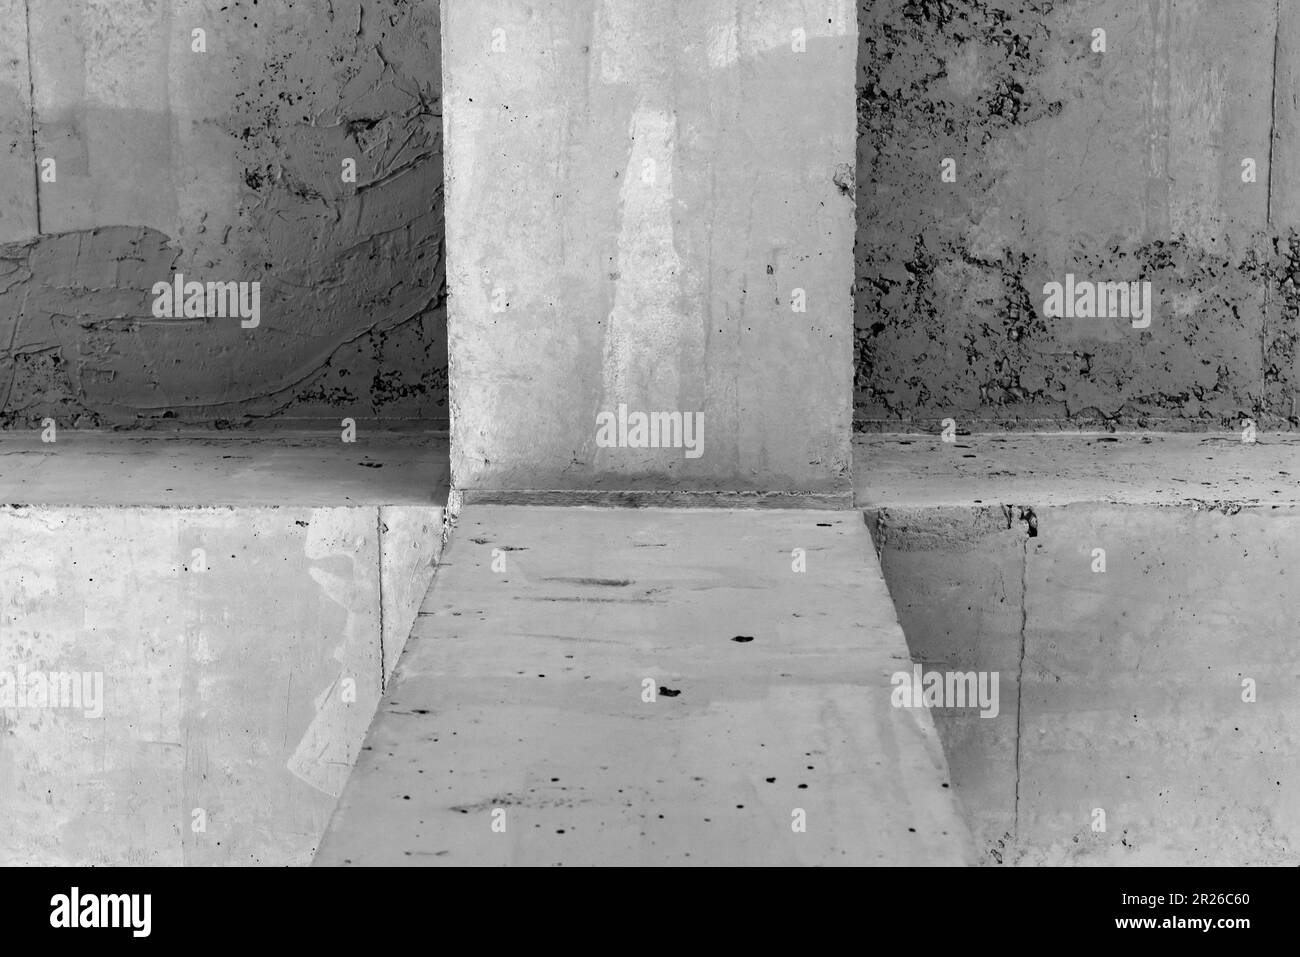 Astratto calcestruzzo interno foto di sfondo, grigio grungy costruzione di travi e muro Foto Stock